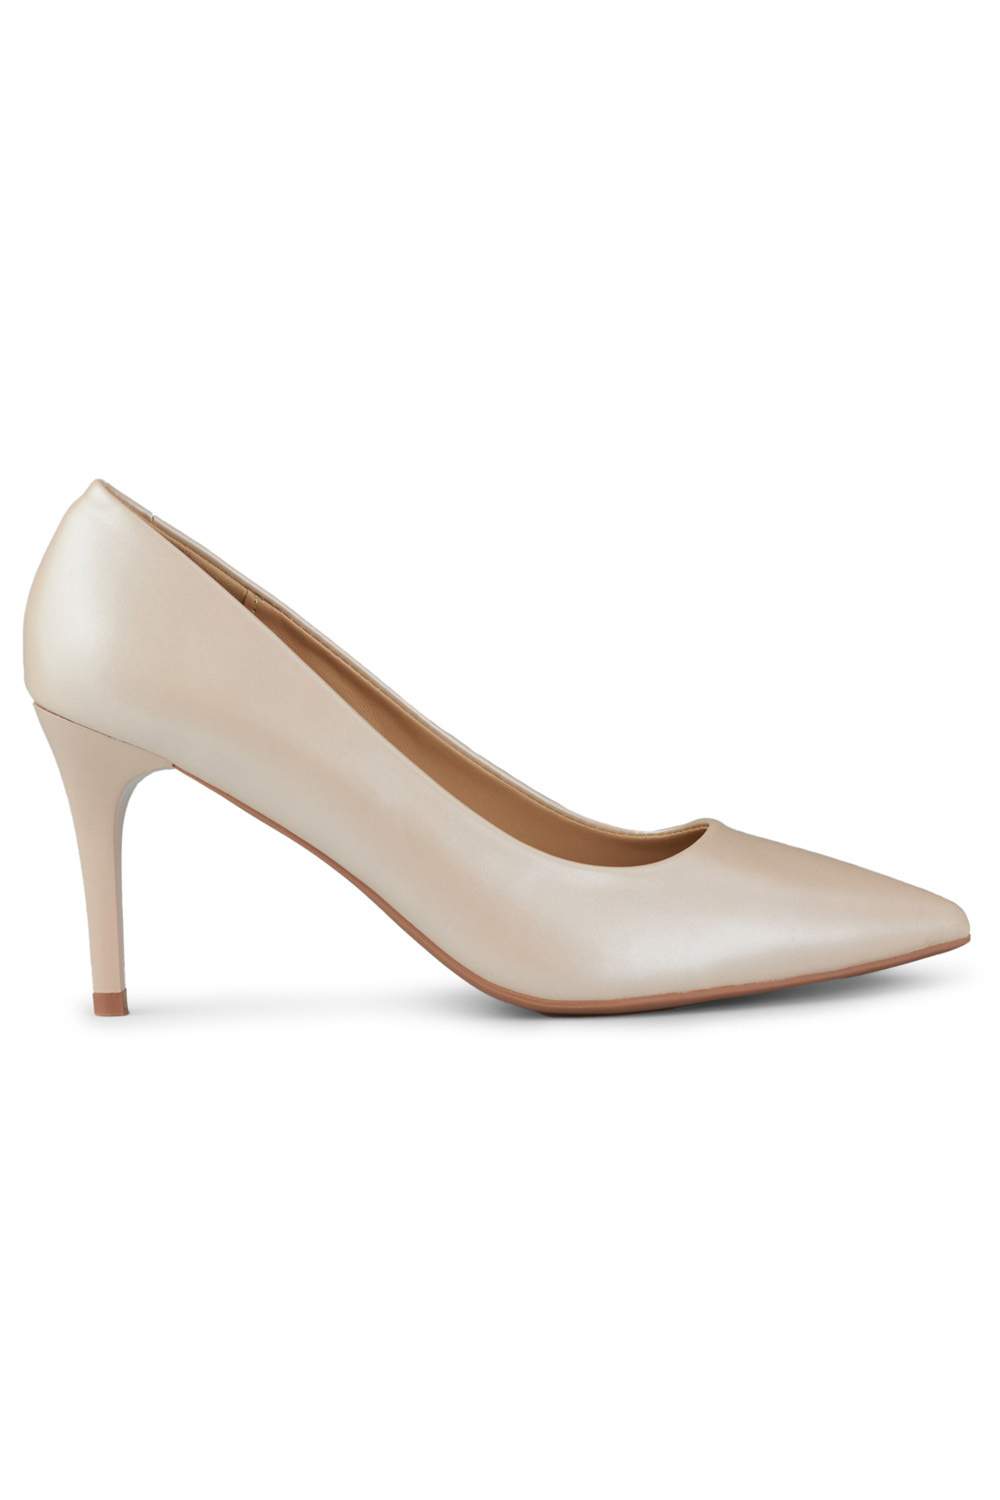  High heels model 190649 PRIMO  beige